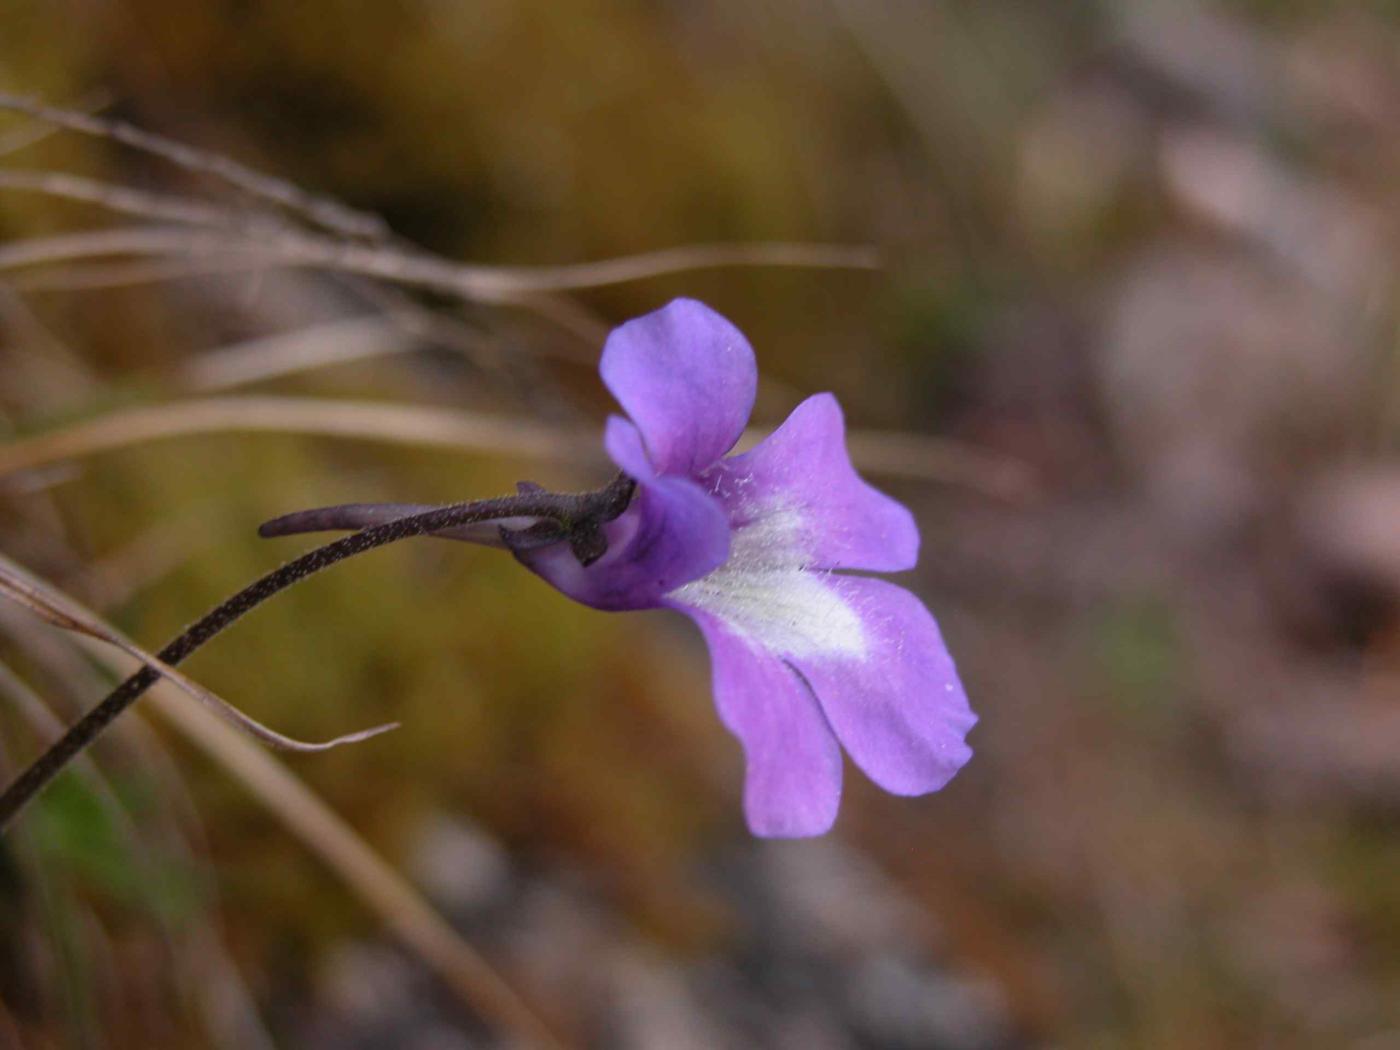 Butterwort [of the causses] flower